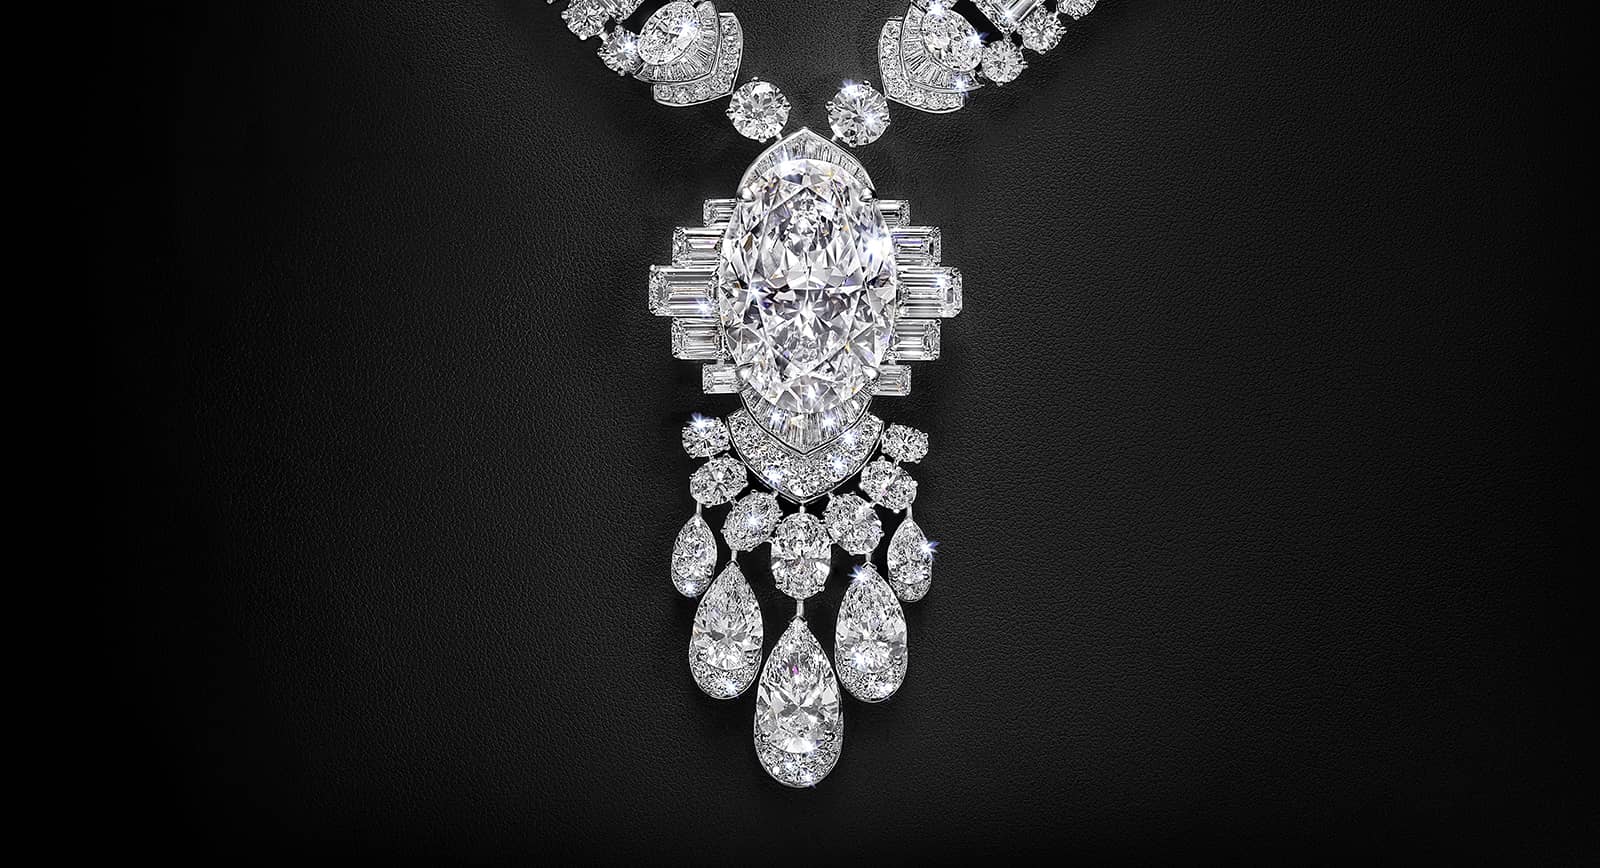 Drops of Light: De Beers' versatile new diamond jewellery collection